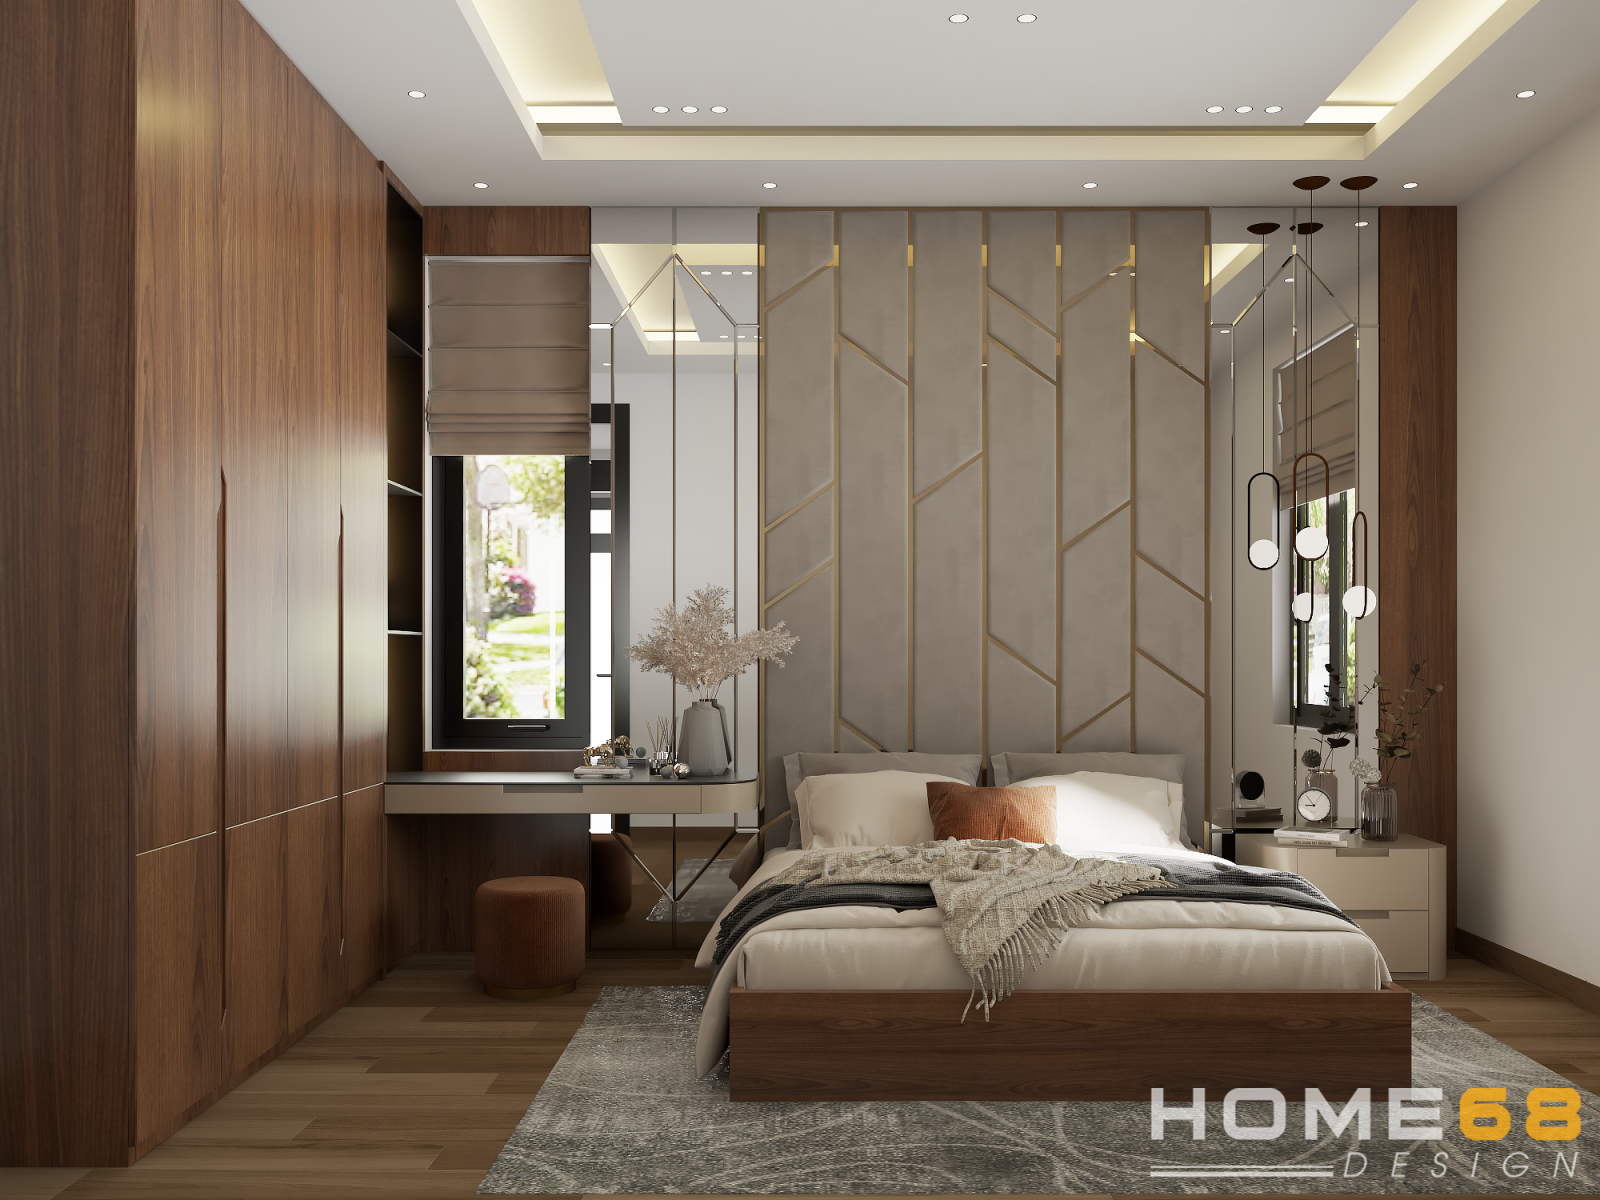 Mẫu thiết kế nội thất phòng ngủ hiện đại, đầy sang trọng - HOME68